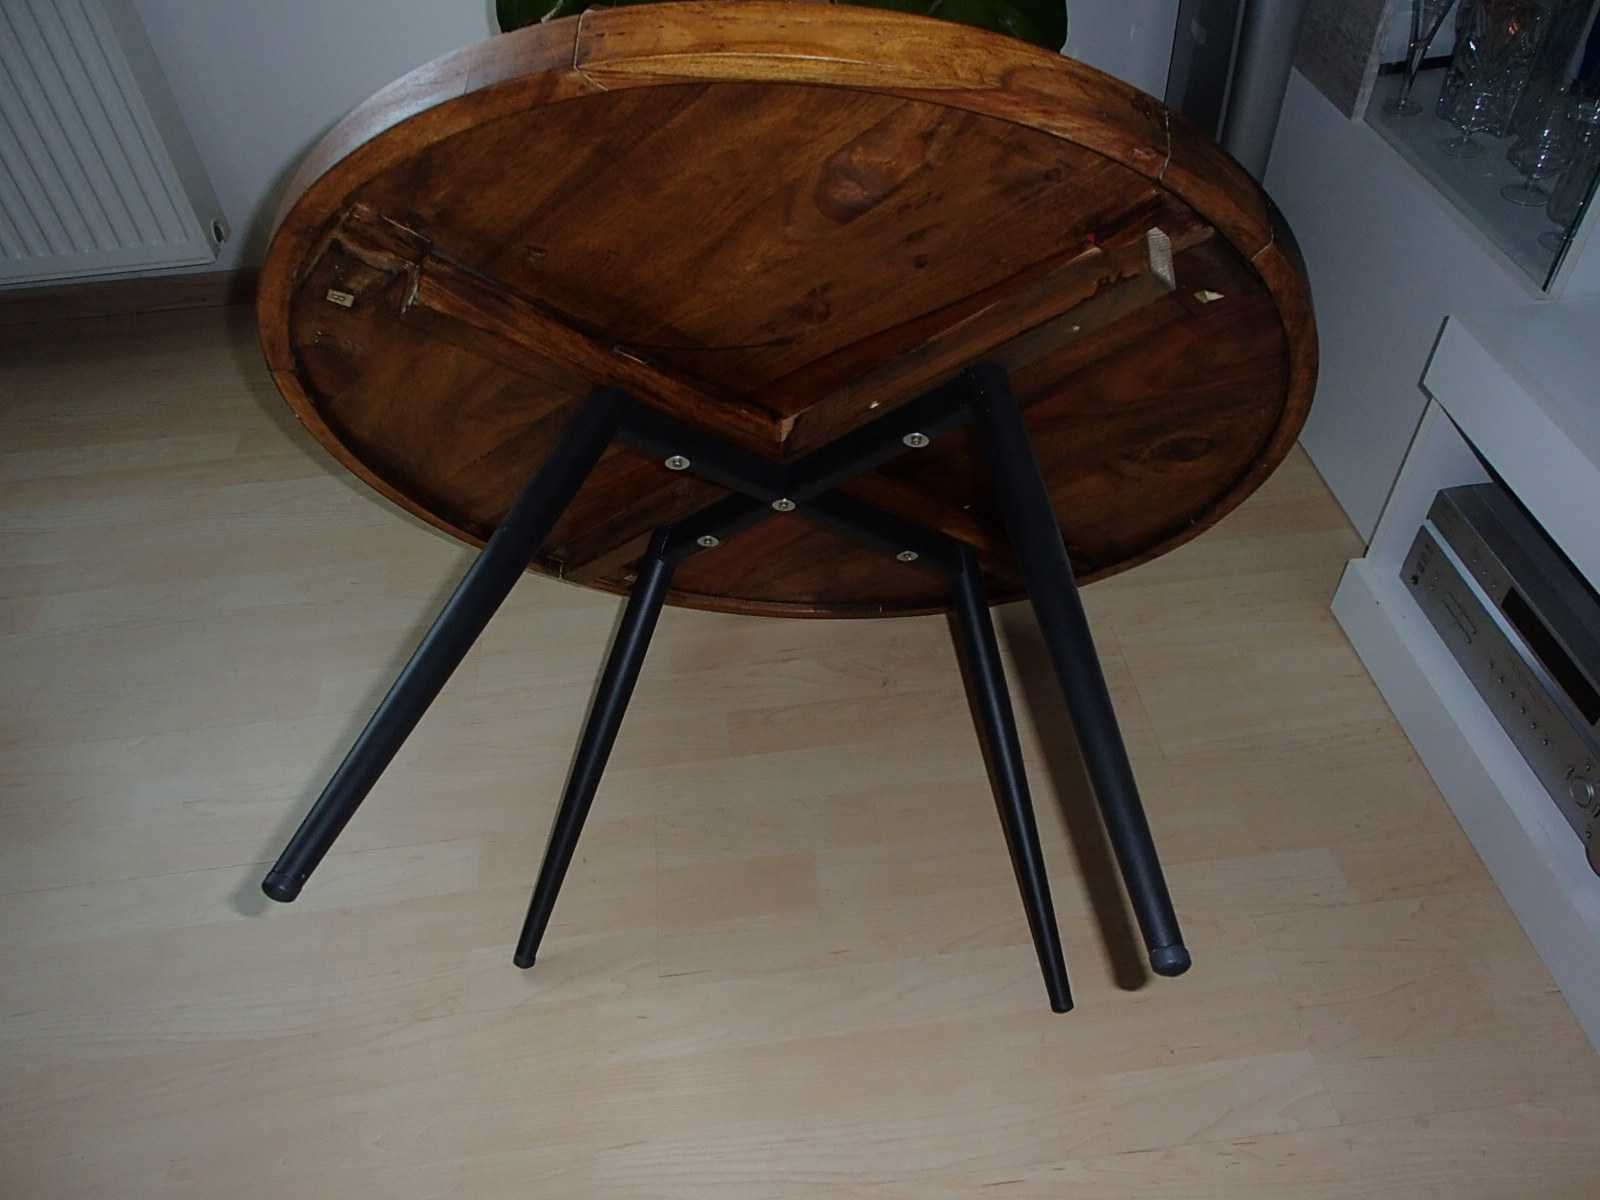 Stół i ławka drewno  dębowe.